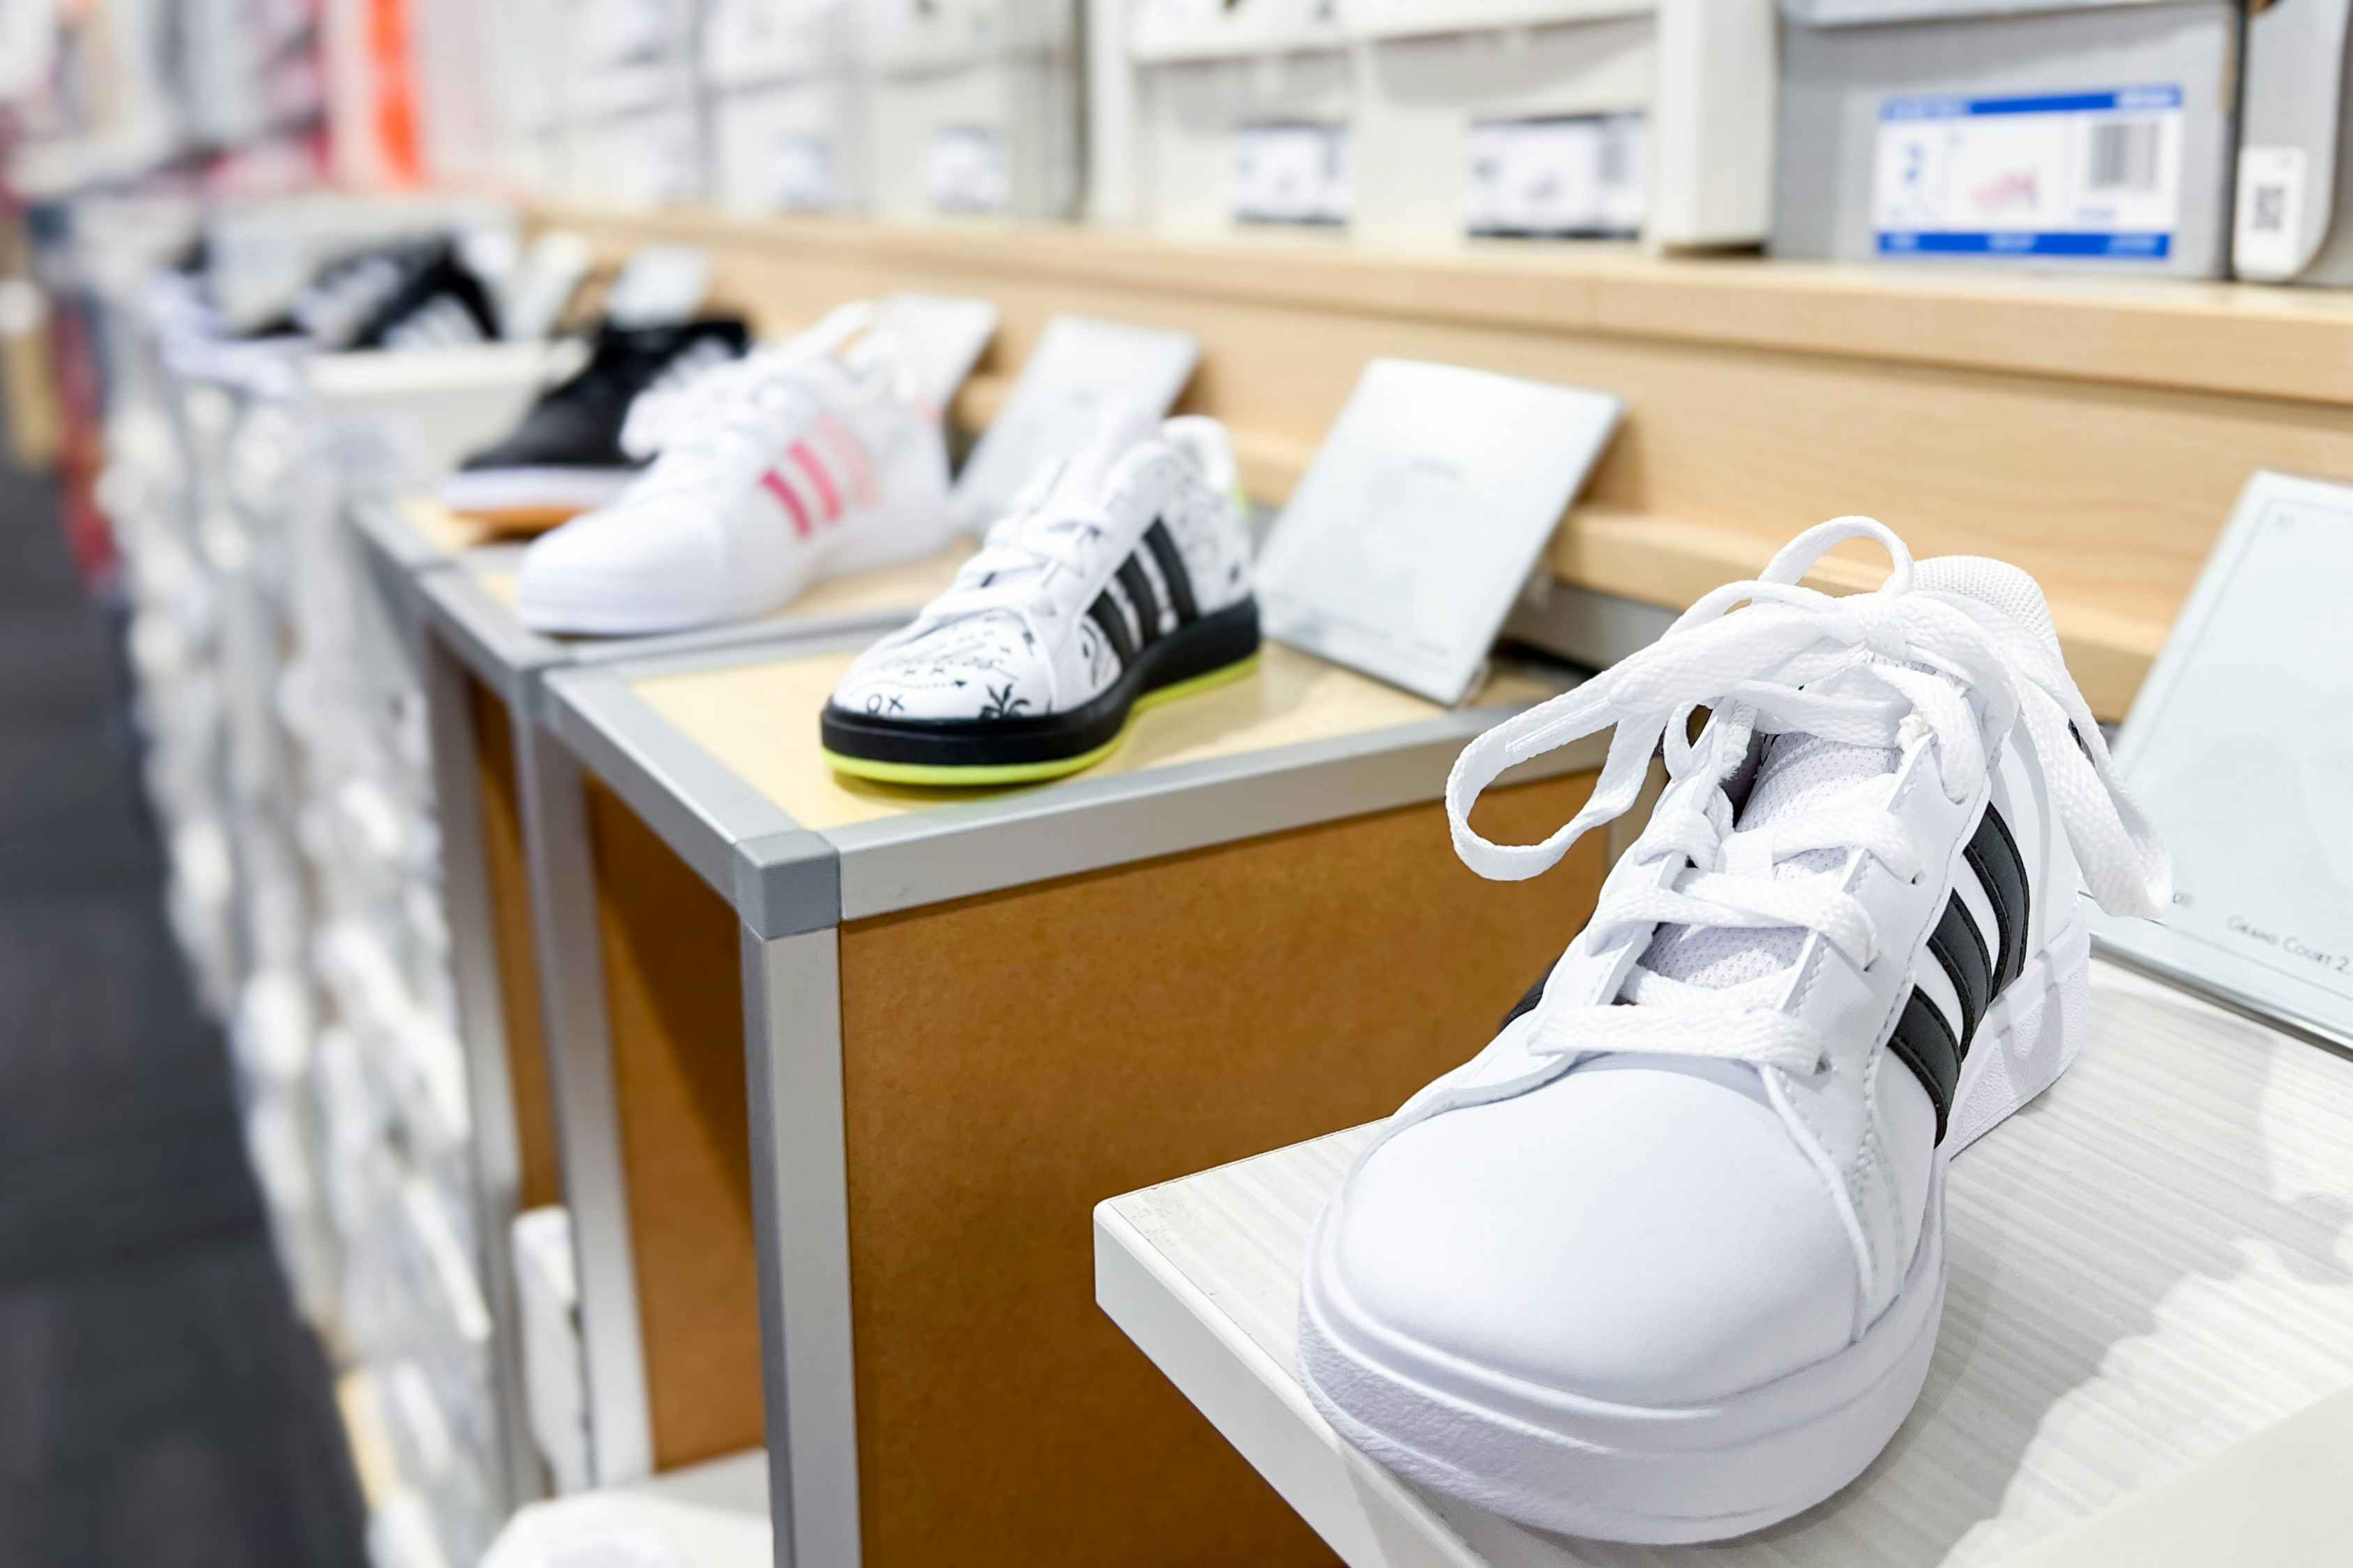 Huge Savings on Adidas Footwear: Get $13 Slides, $20 Sneakers, and More